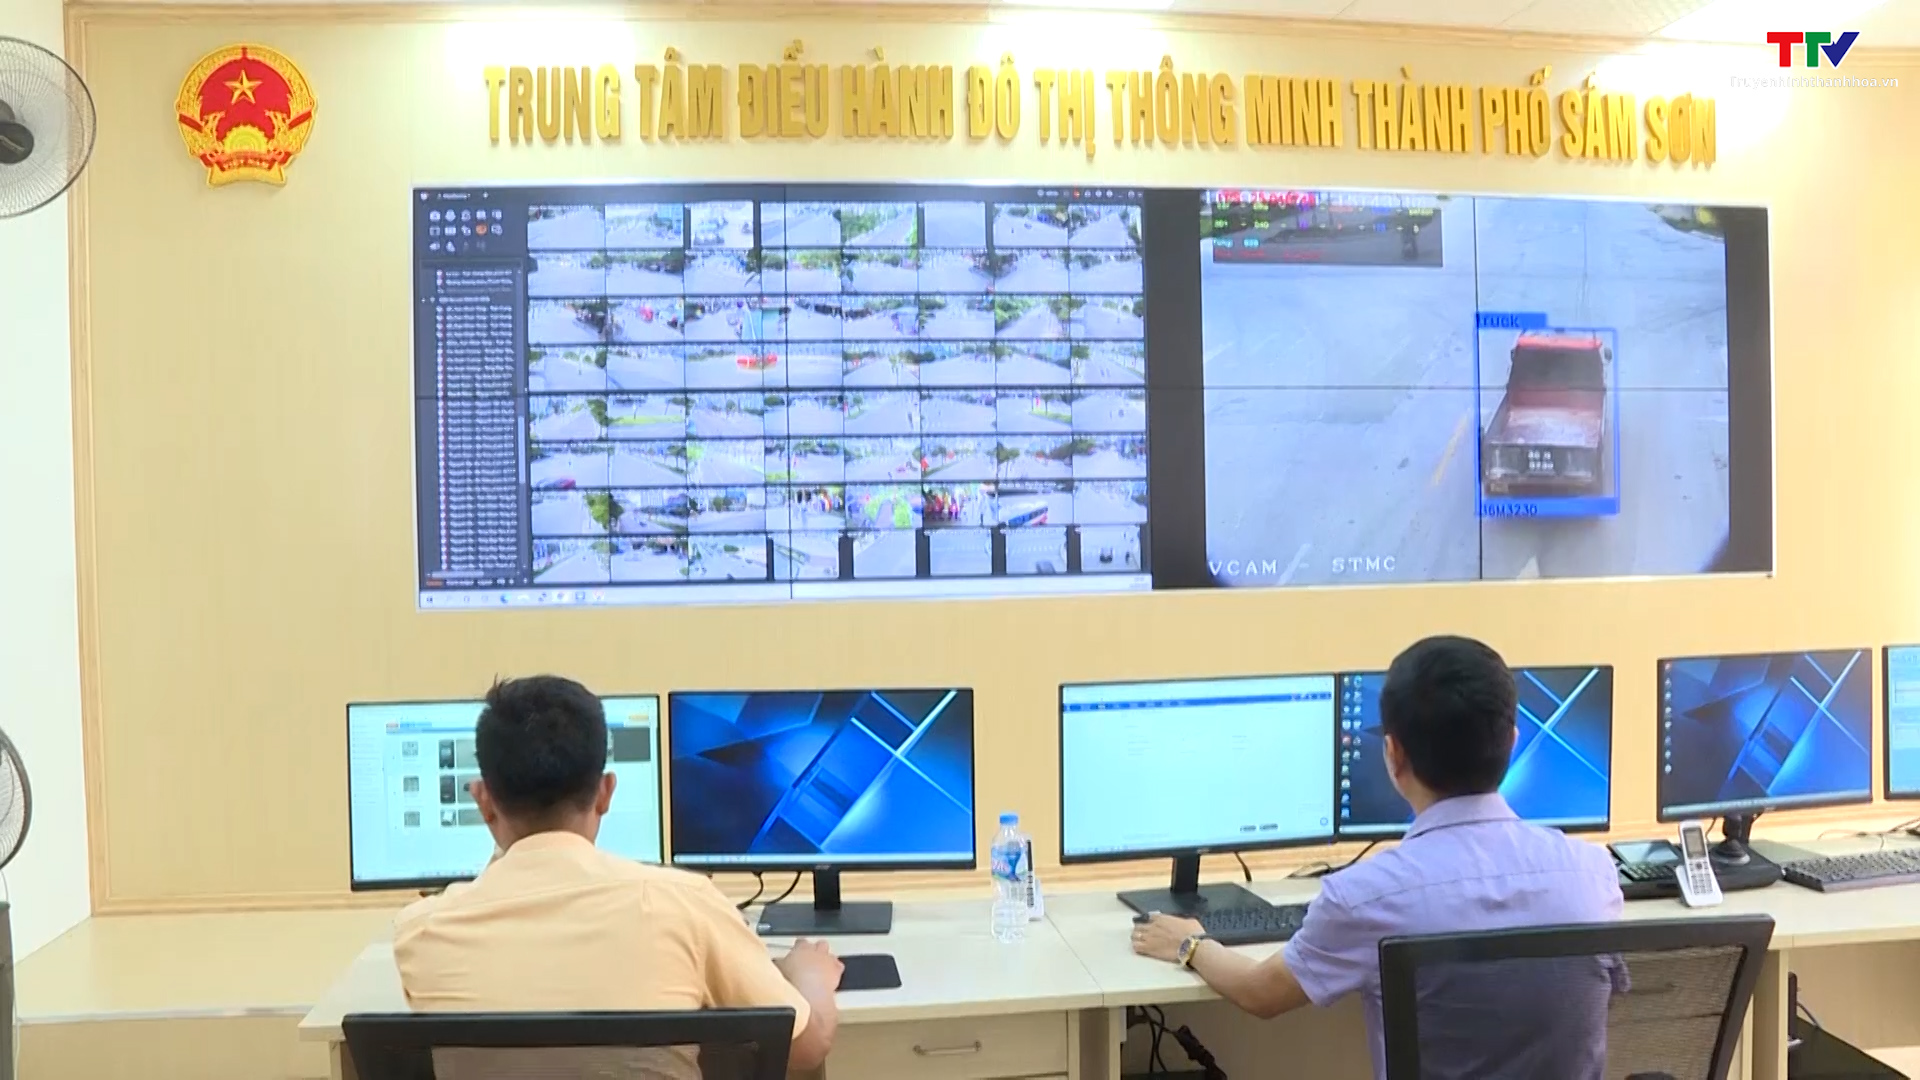 Hiệu quả ứng dụng Trung tâm điều hành đô thị thông minh tại thành phố Sầm Sơn - Ảnh 2.